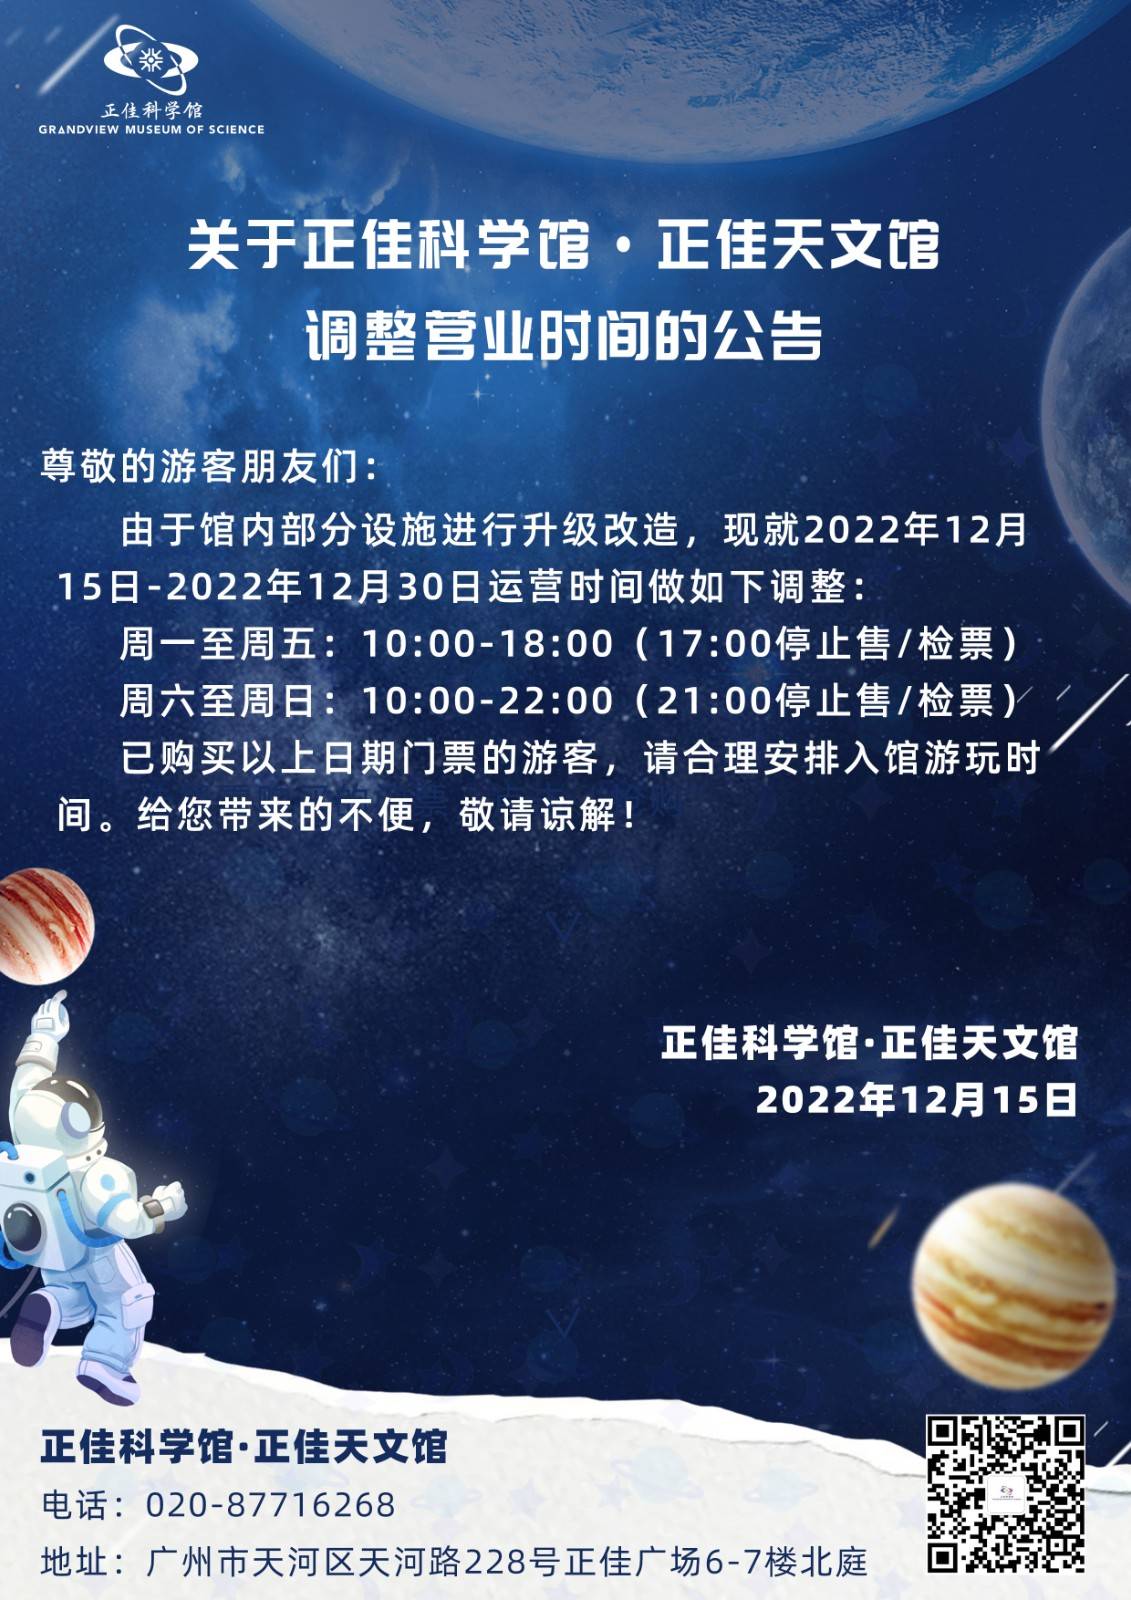 【2023年常规票】 广州正佳科学馆+天文馆联票-优待票